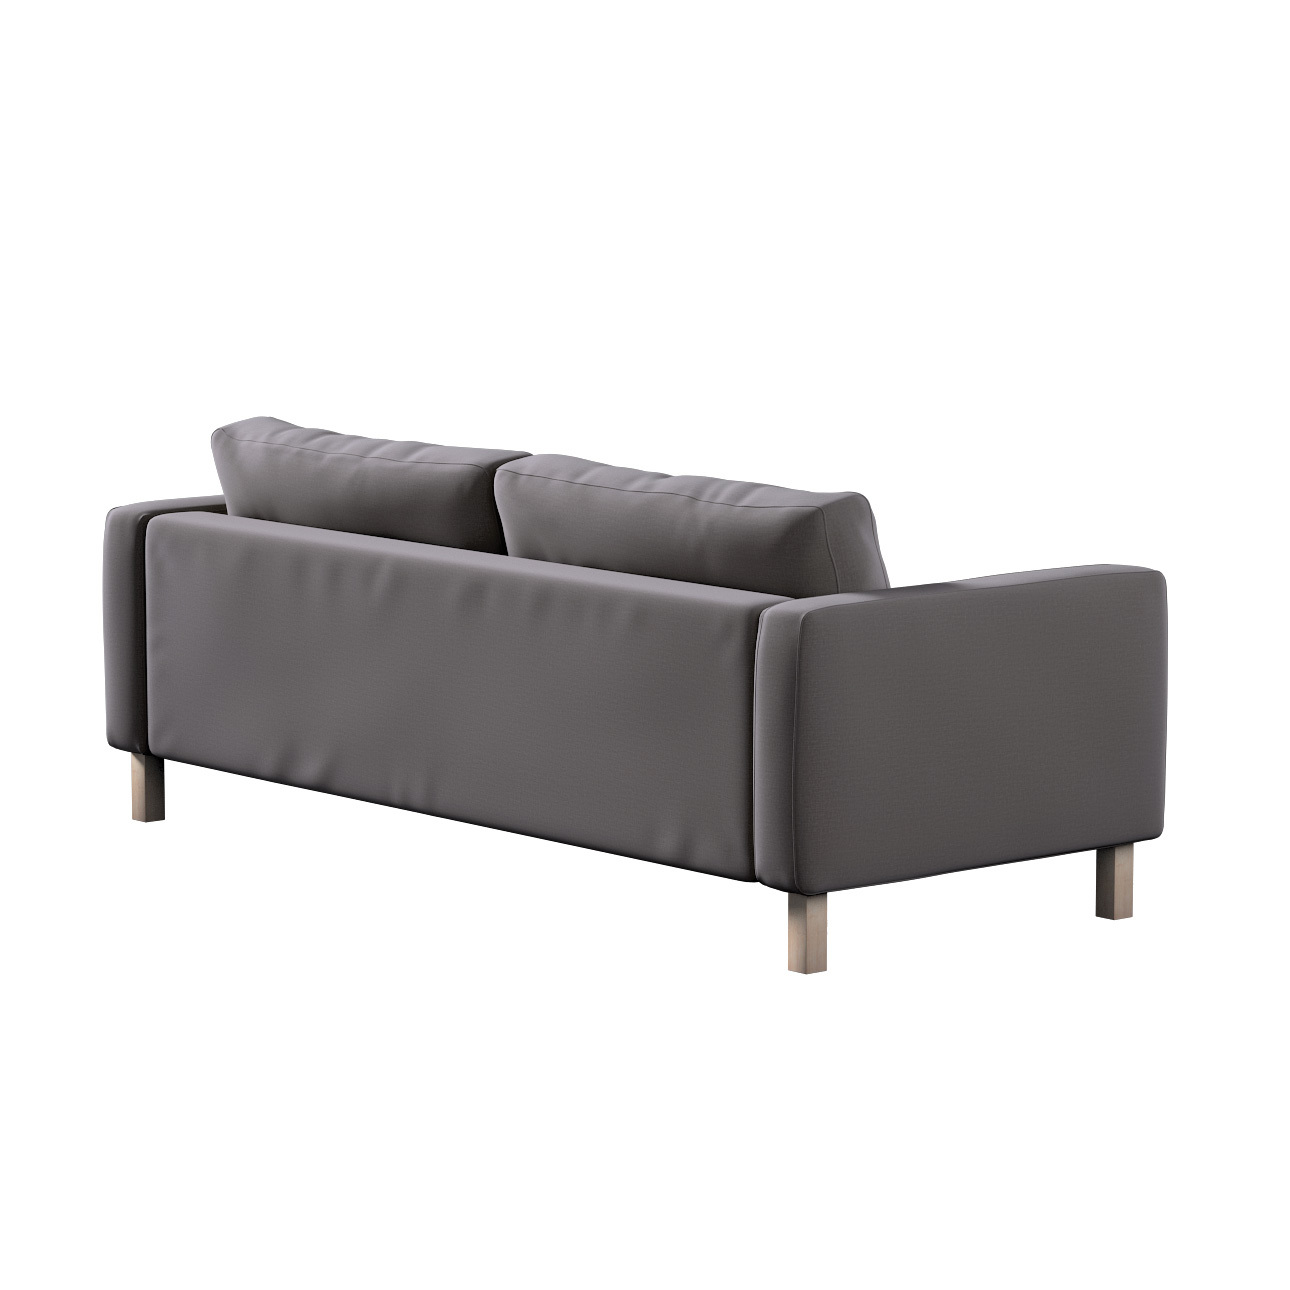 Bezug für Karlstad 3-Sitzer Sofa nicht ausklappbar, kurz, braun, Bezug für günstig online kaufen